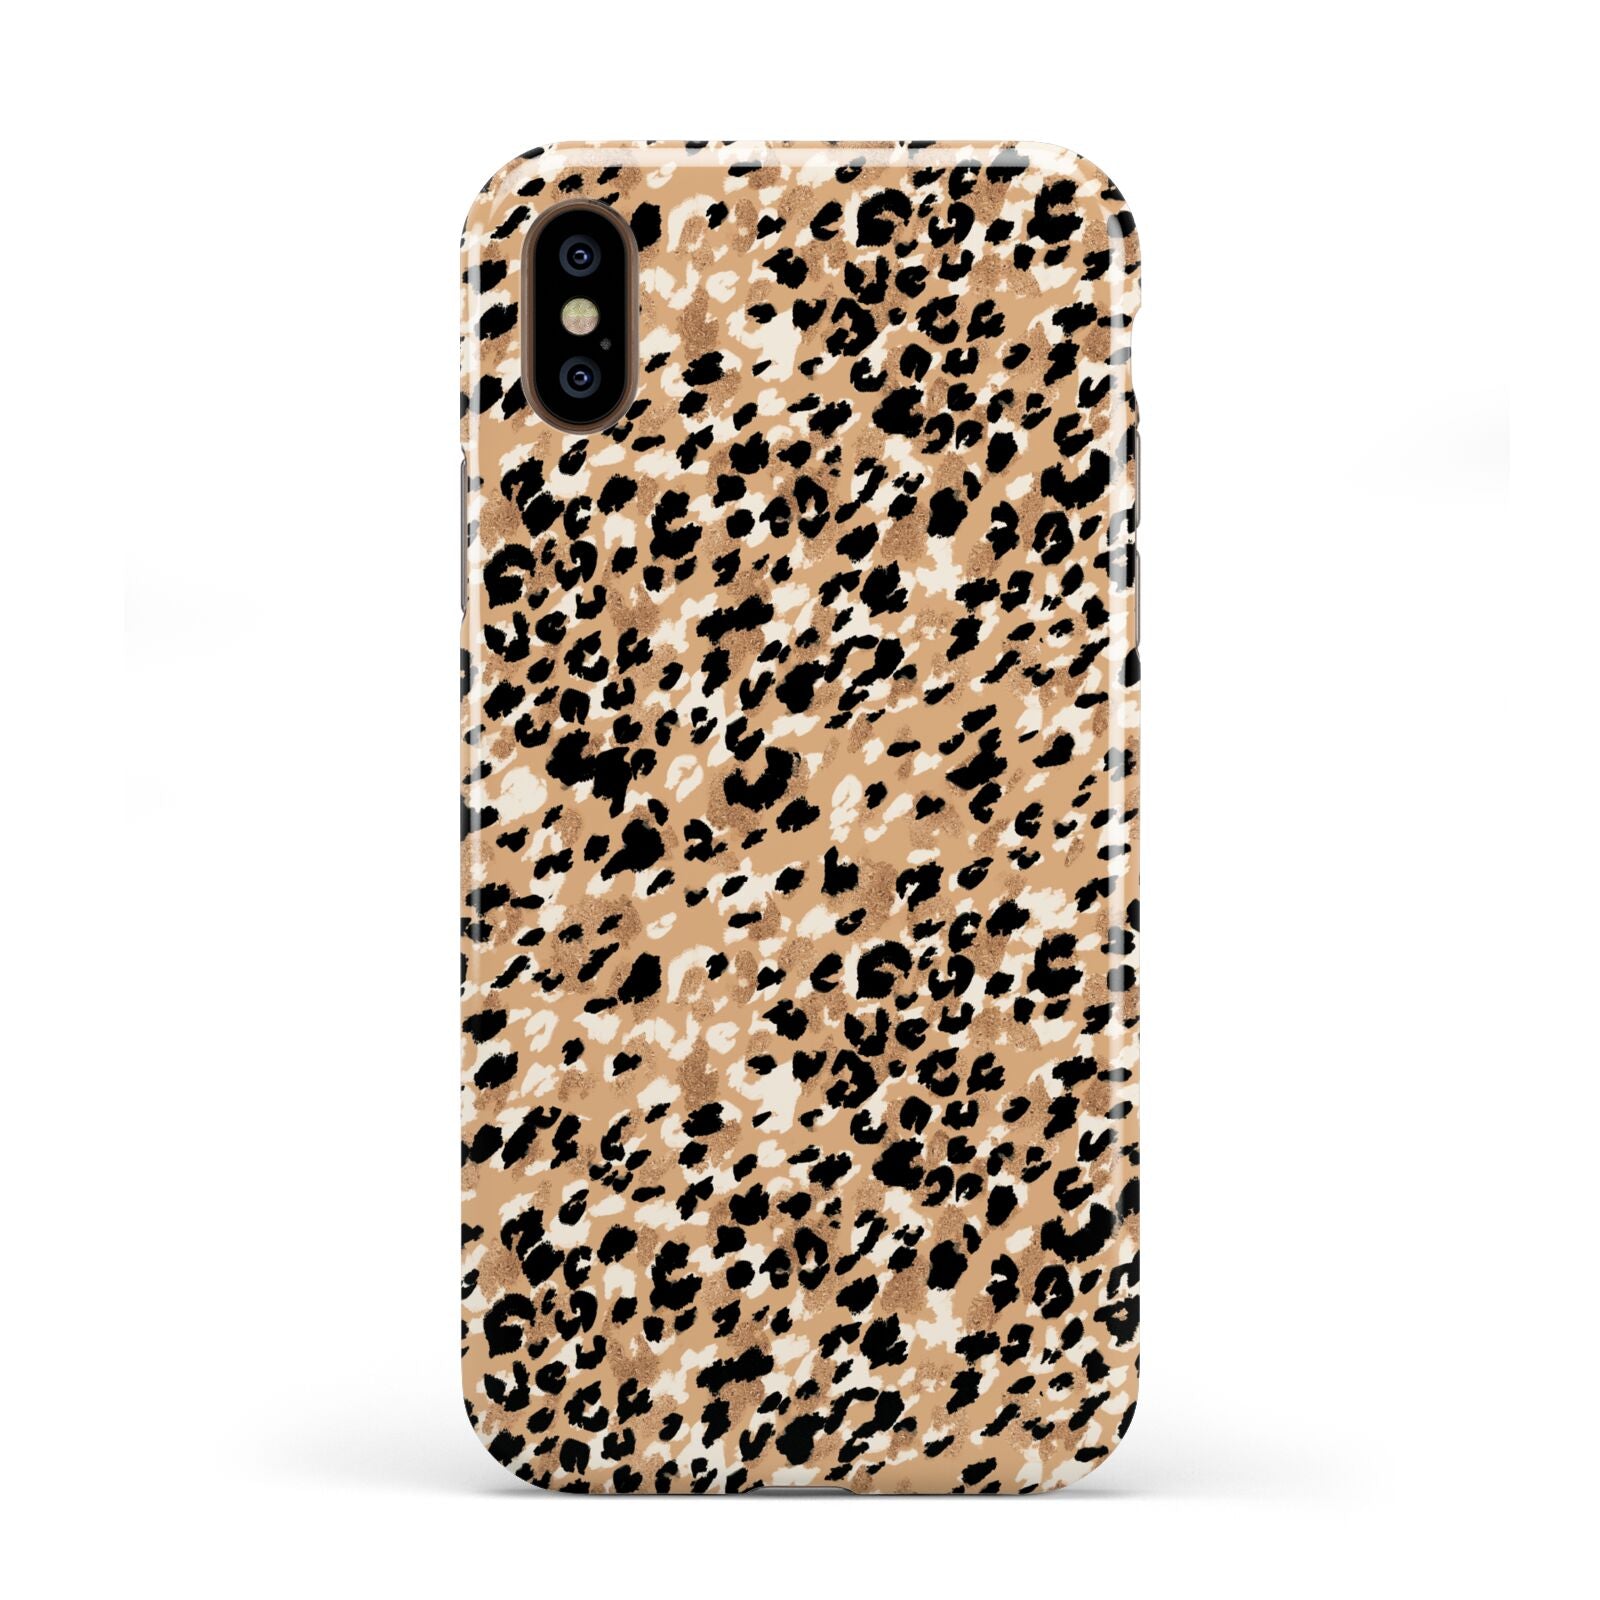 Leopard Print Apple iPhone XS 3D Tough